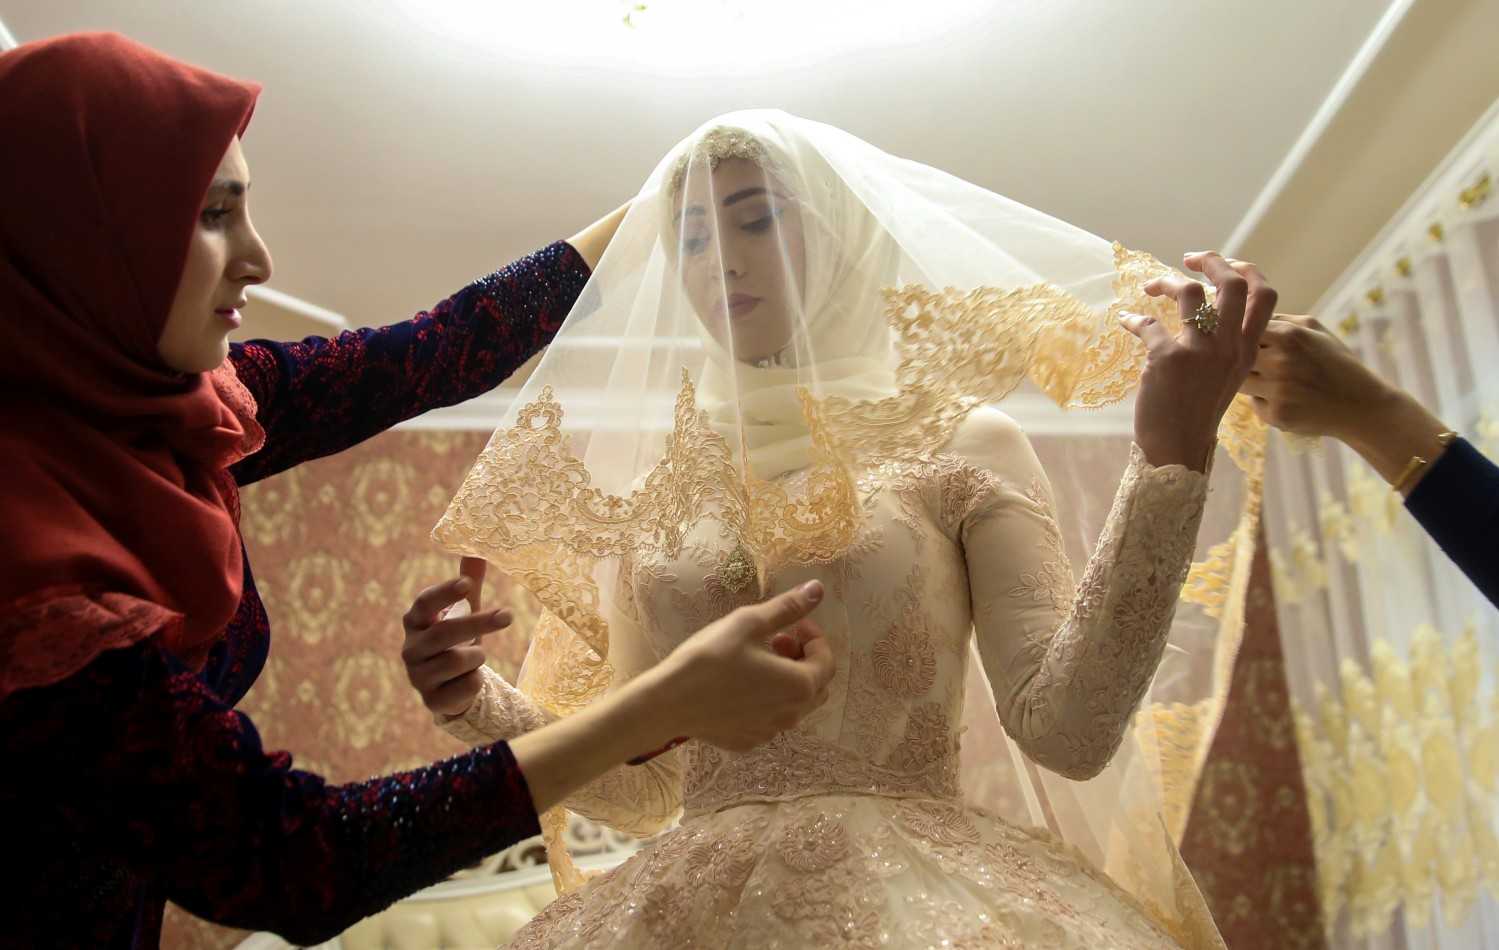 Как проходит чеченская свадьба Древние традиции практически не изменились но есть в них и признаки современности украшающие торжество Выбор невесты празднование выкупа подбор платья клятва молодоженов песни и танцы